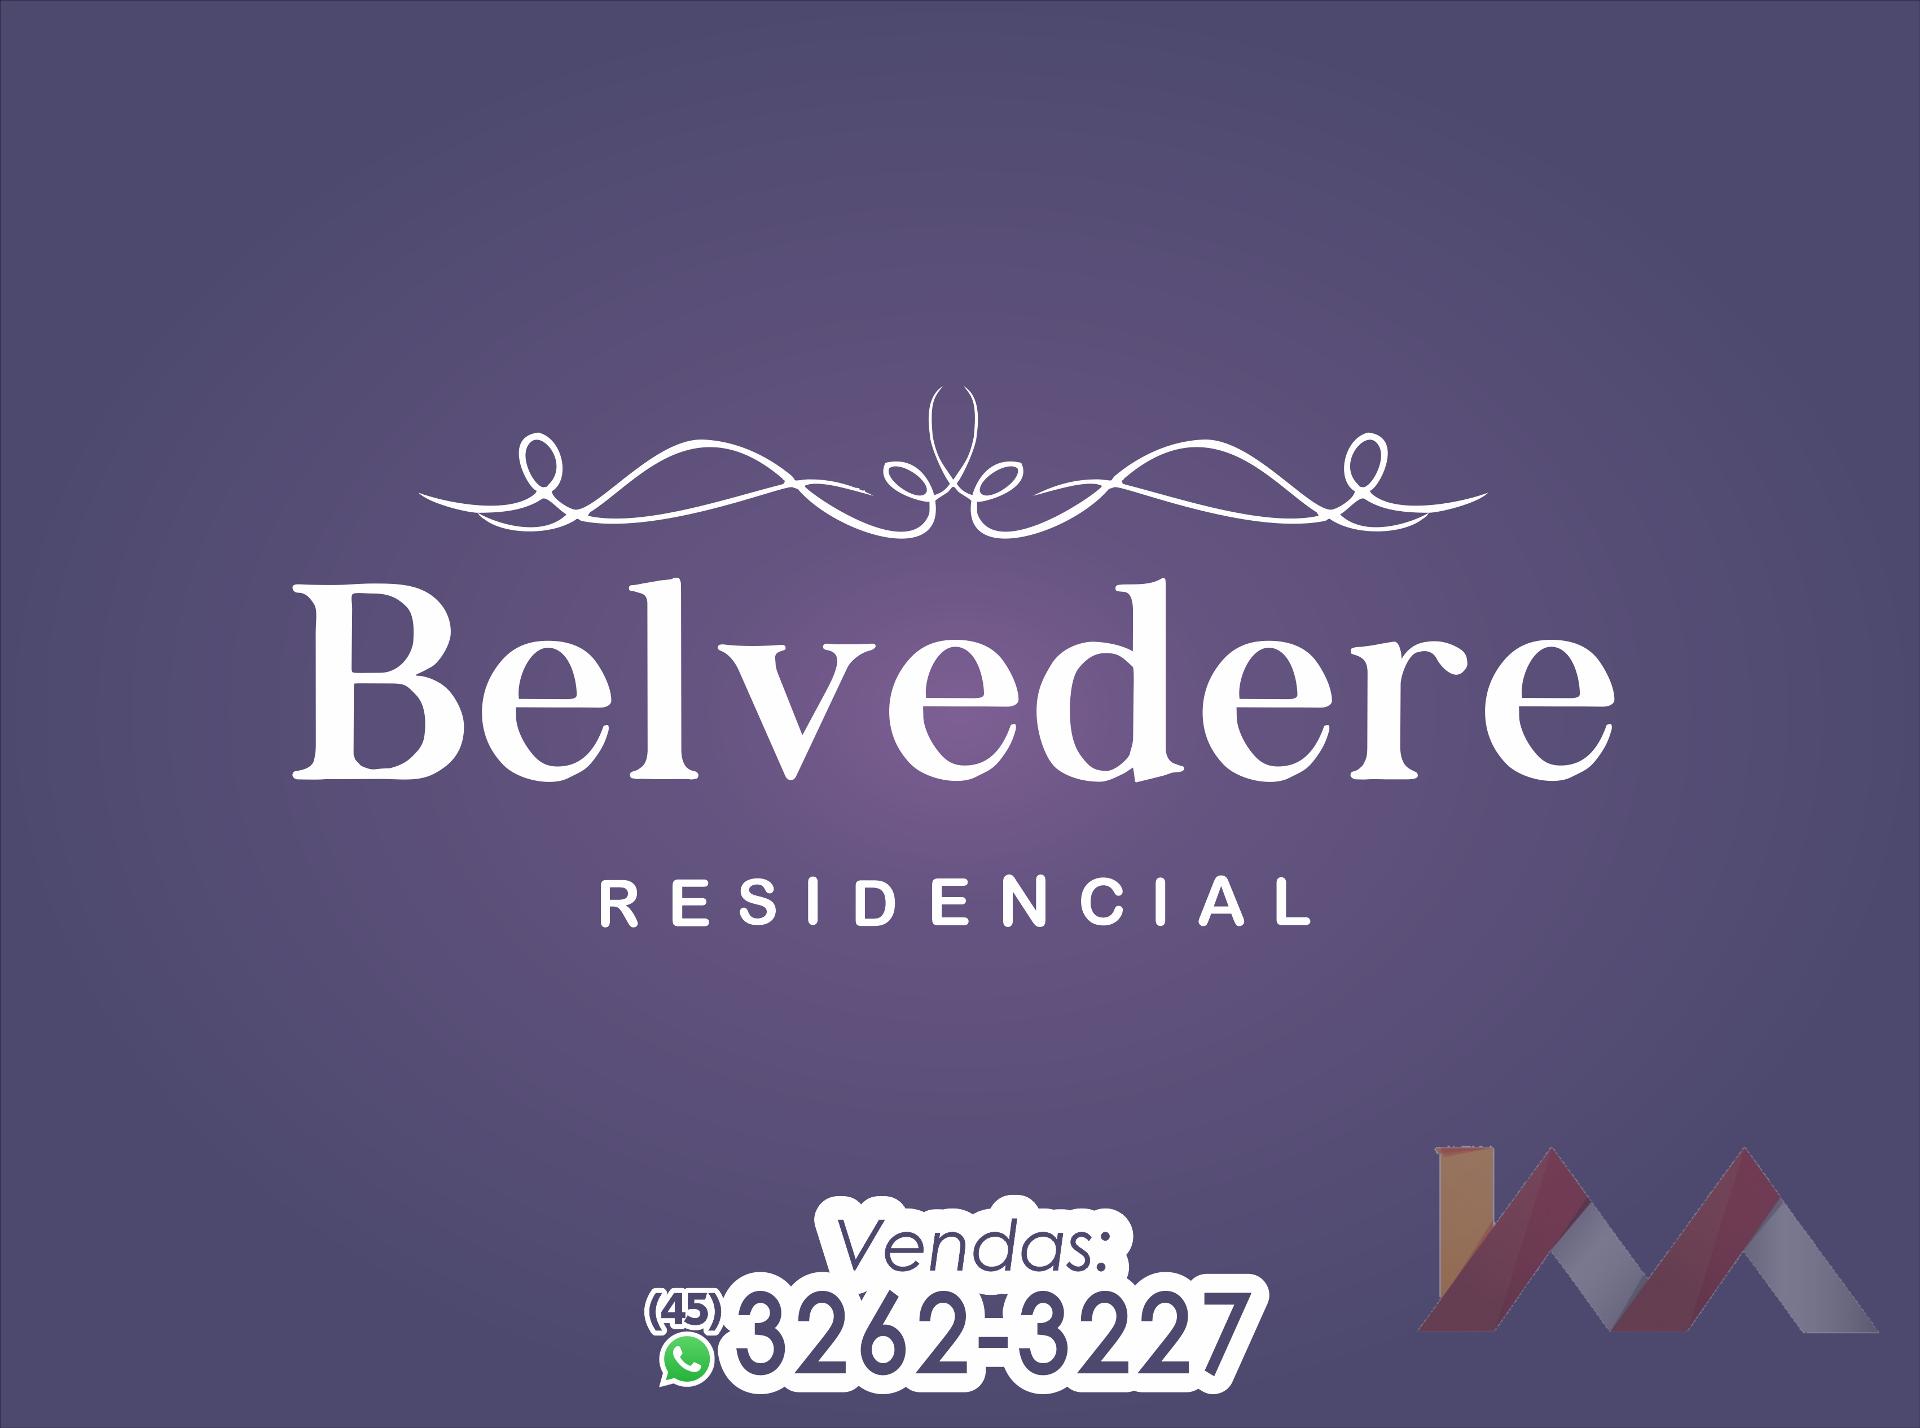 Apartamento 103 do Residencial Belvedere